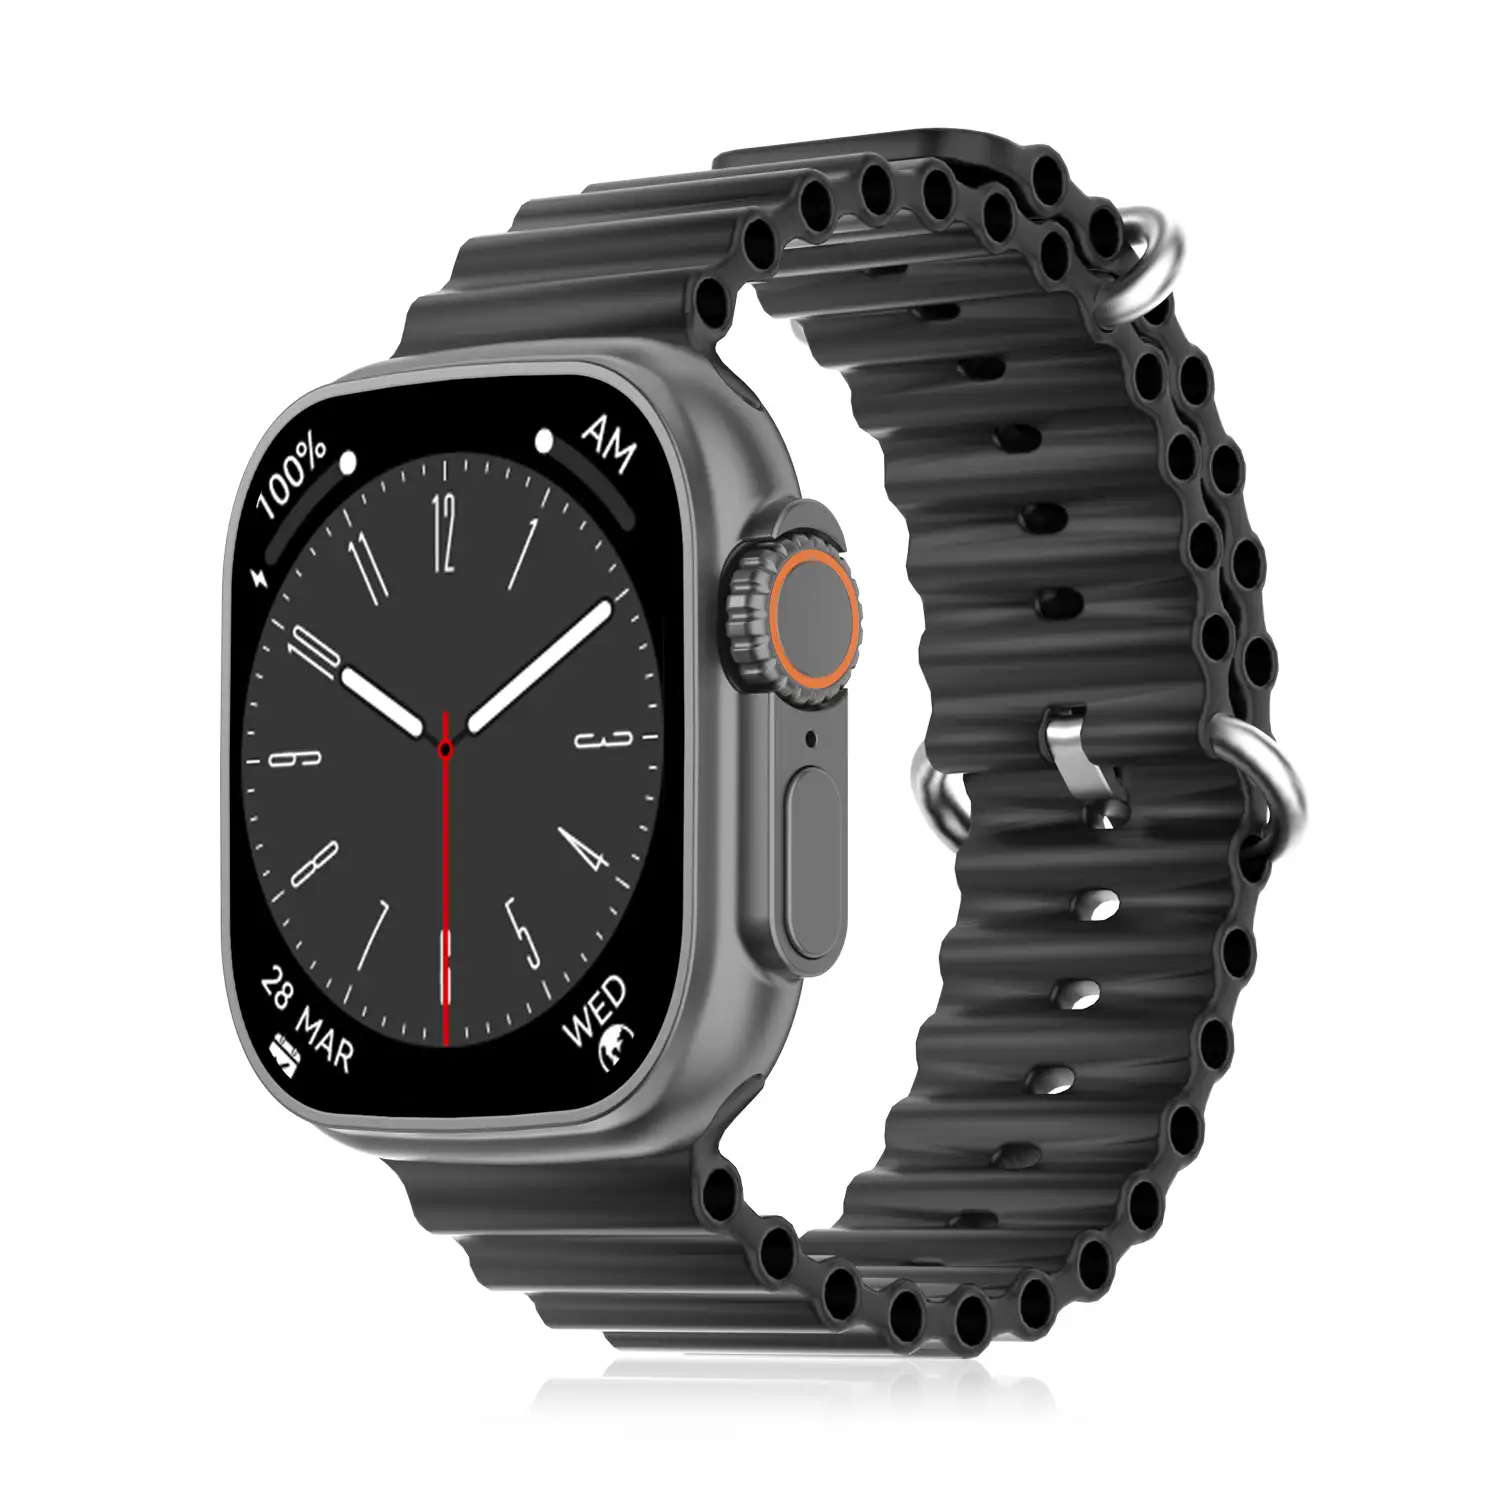 Smartwatch DT8 Ultra con pantalla de 2.0 pulgadas HR y función Always-On display. Widgets personalizables. Correa Sea band.